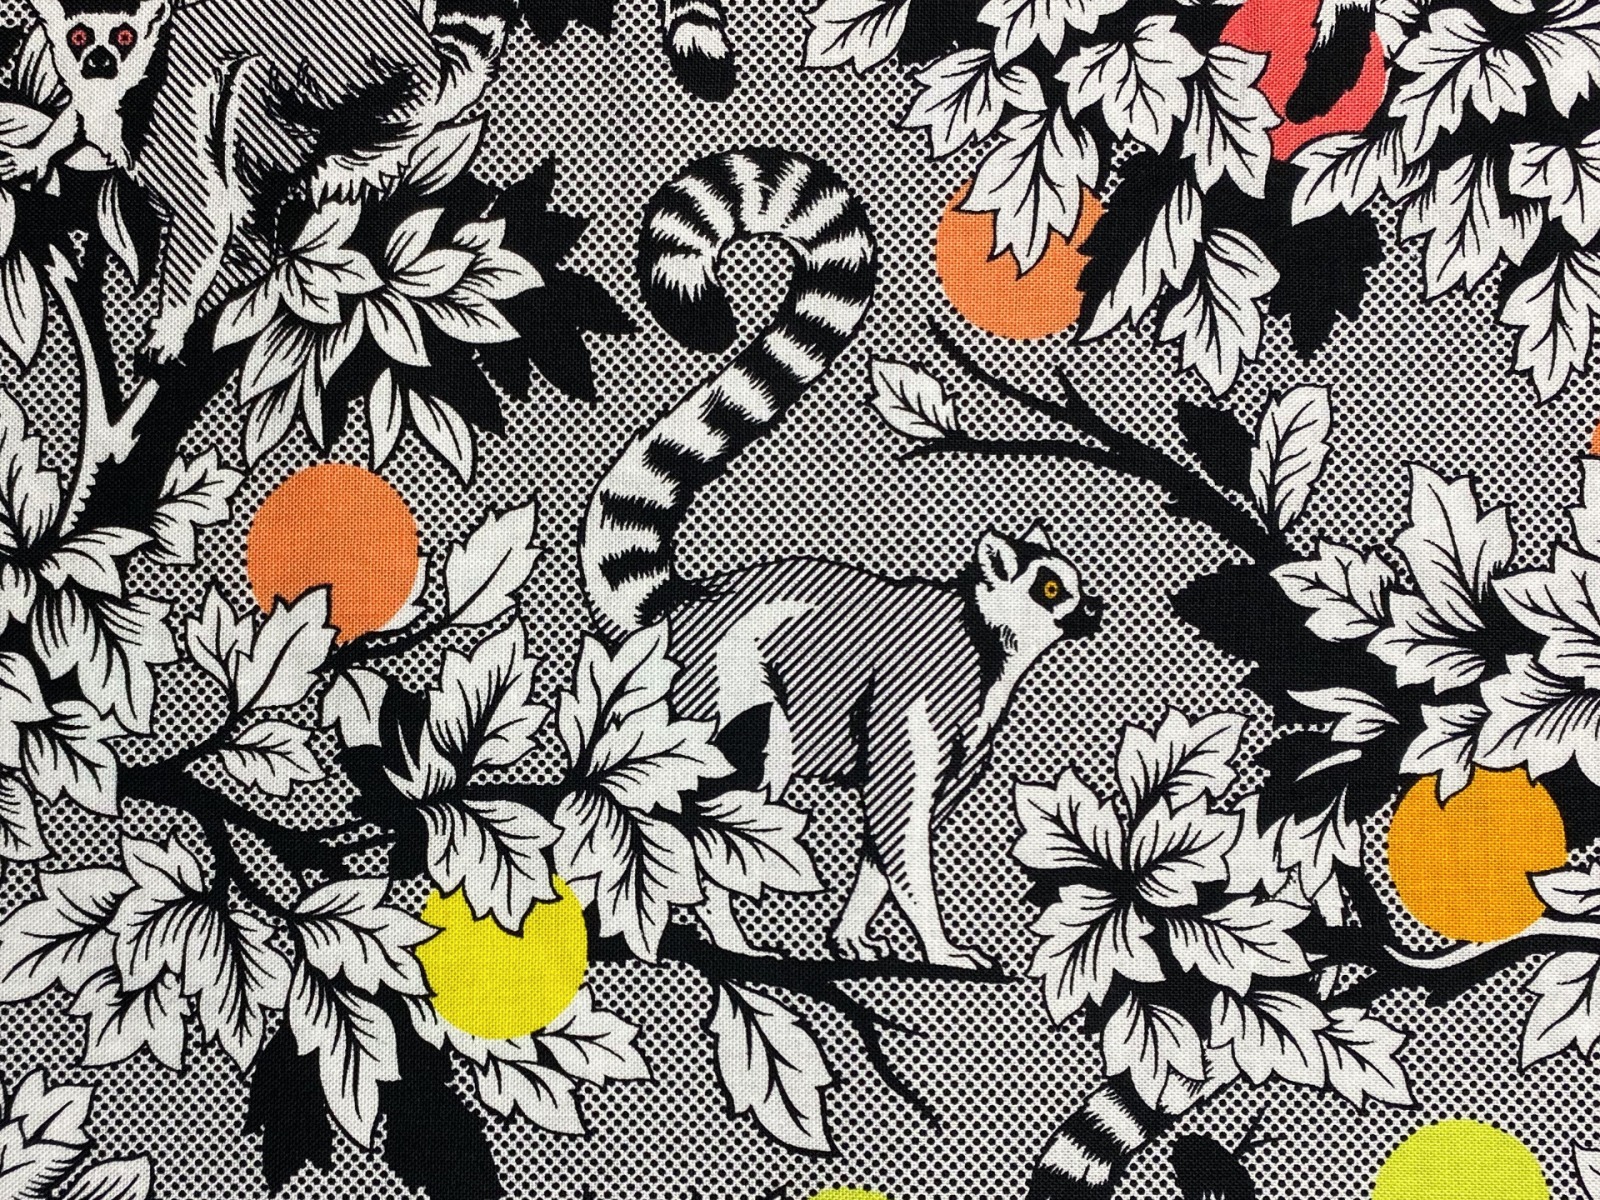 Stoff Lemur Me Alone - 100 Baumwolle - schwarz/weiß - Patchwork - Free Spirit Fabrics - Tula Pink - Kattas -Lemuren 2